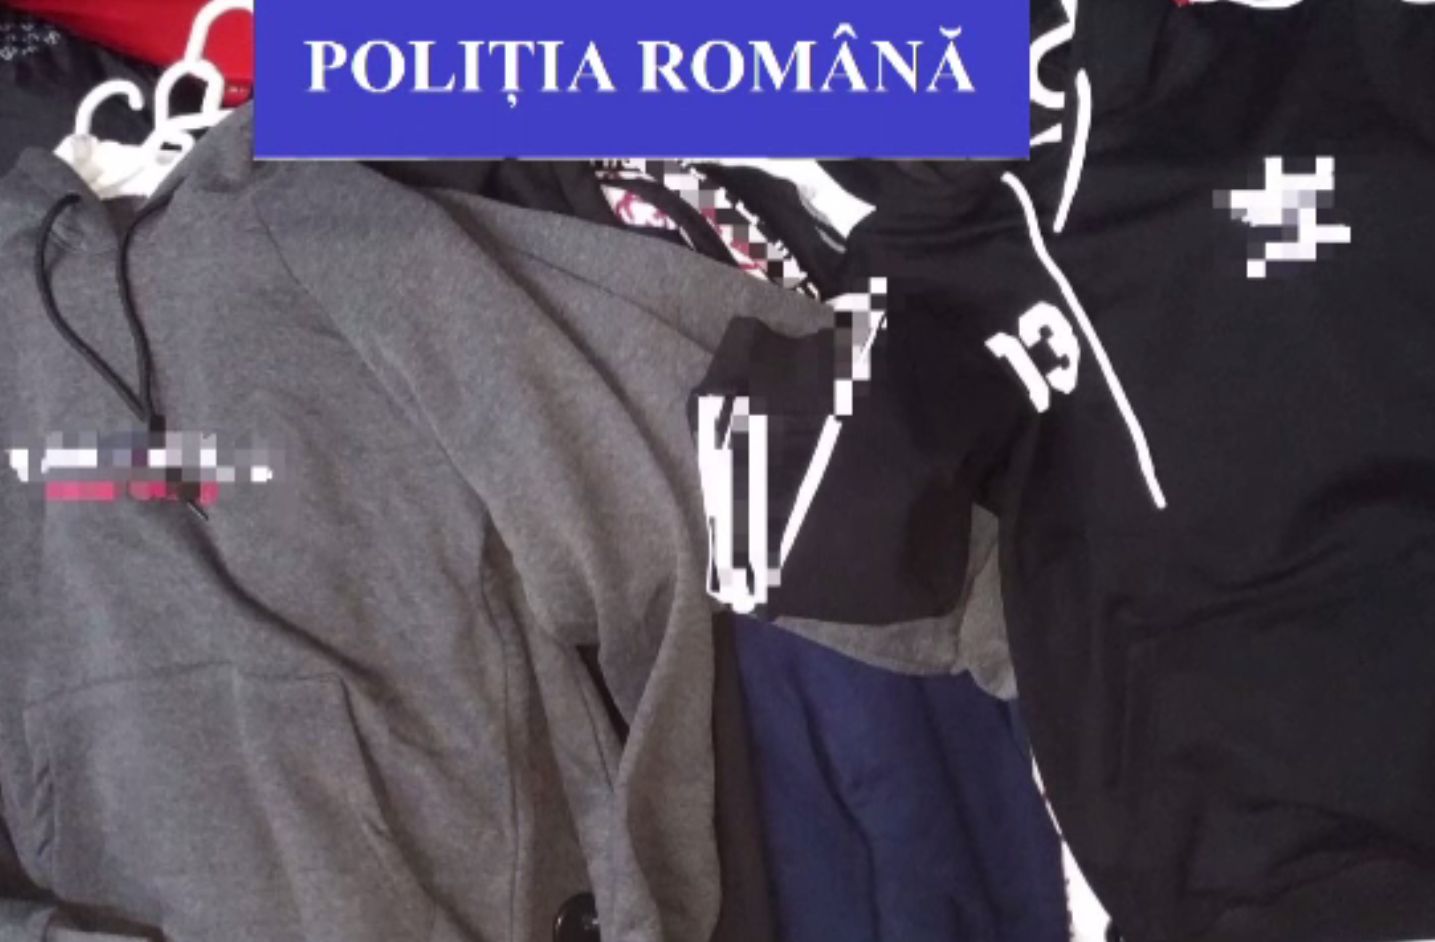 Magazin cu haine de firmă contrafăcute, închis în Bihor